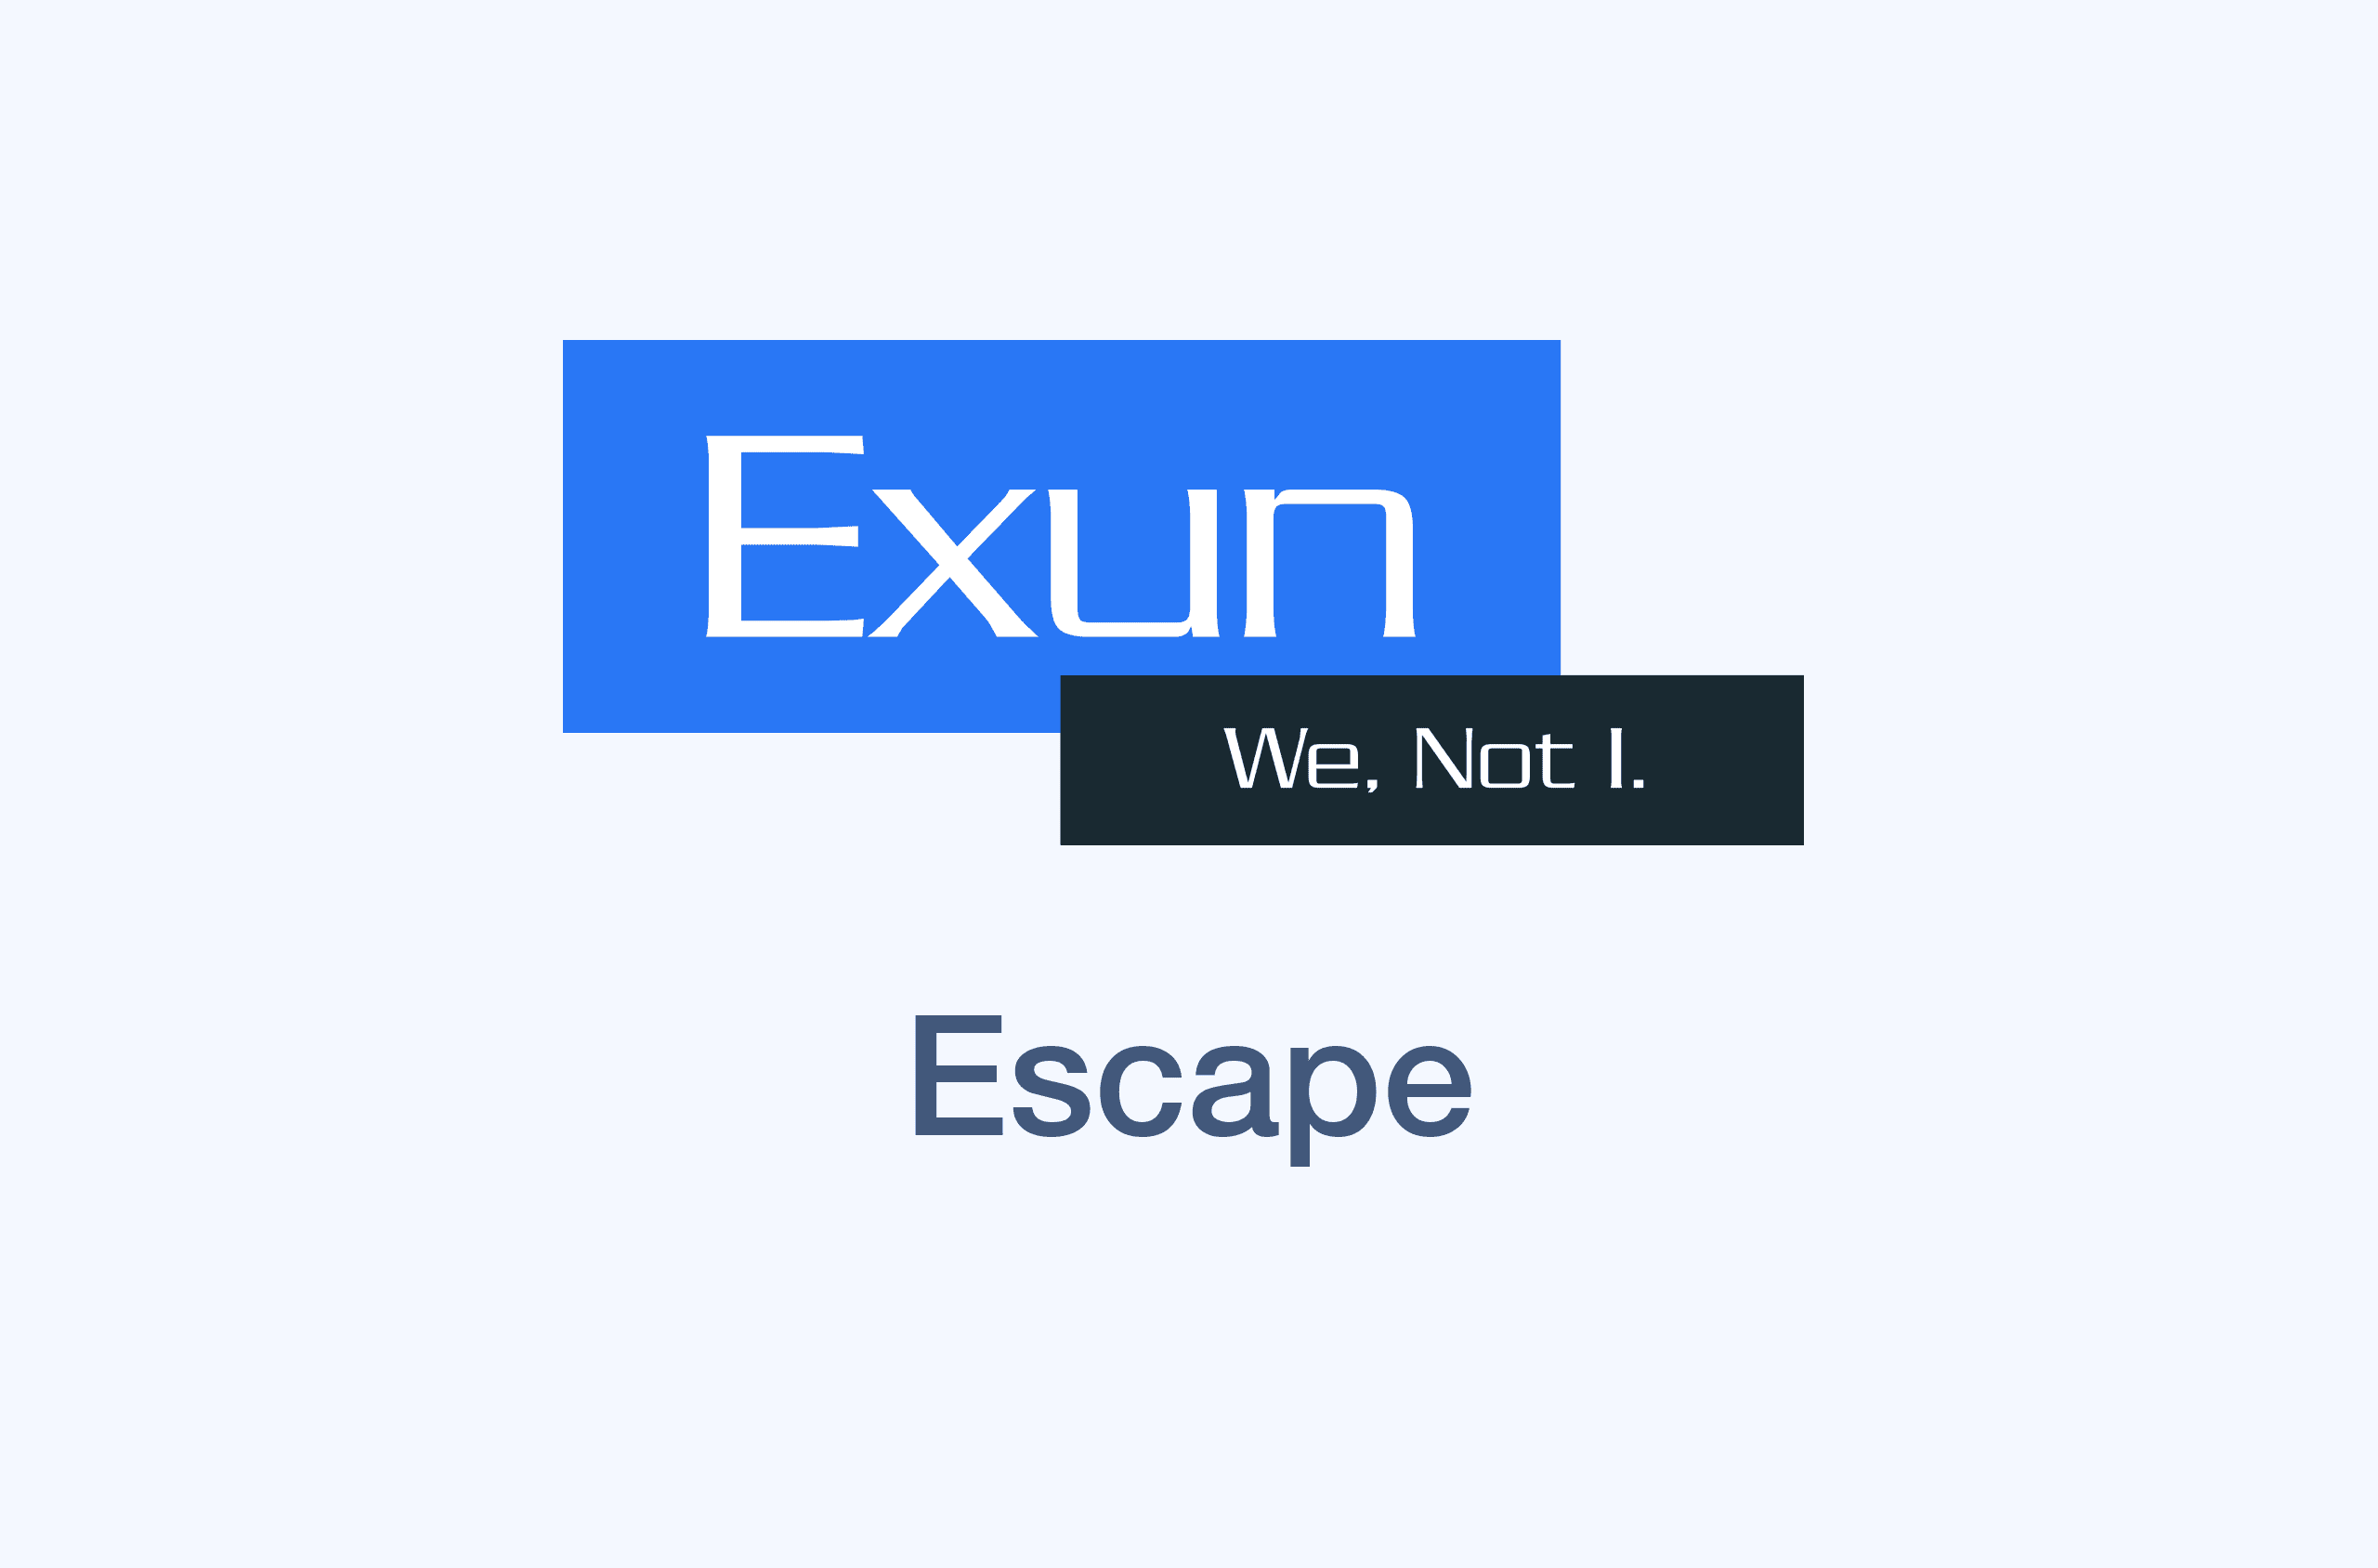 Escape's image